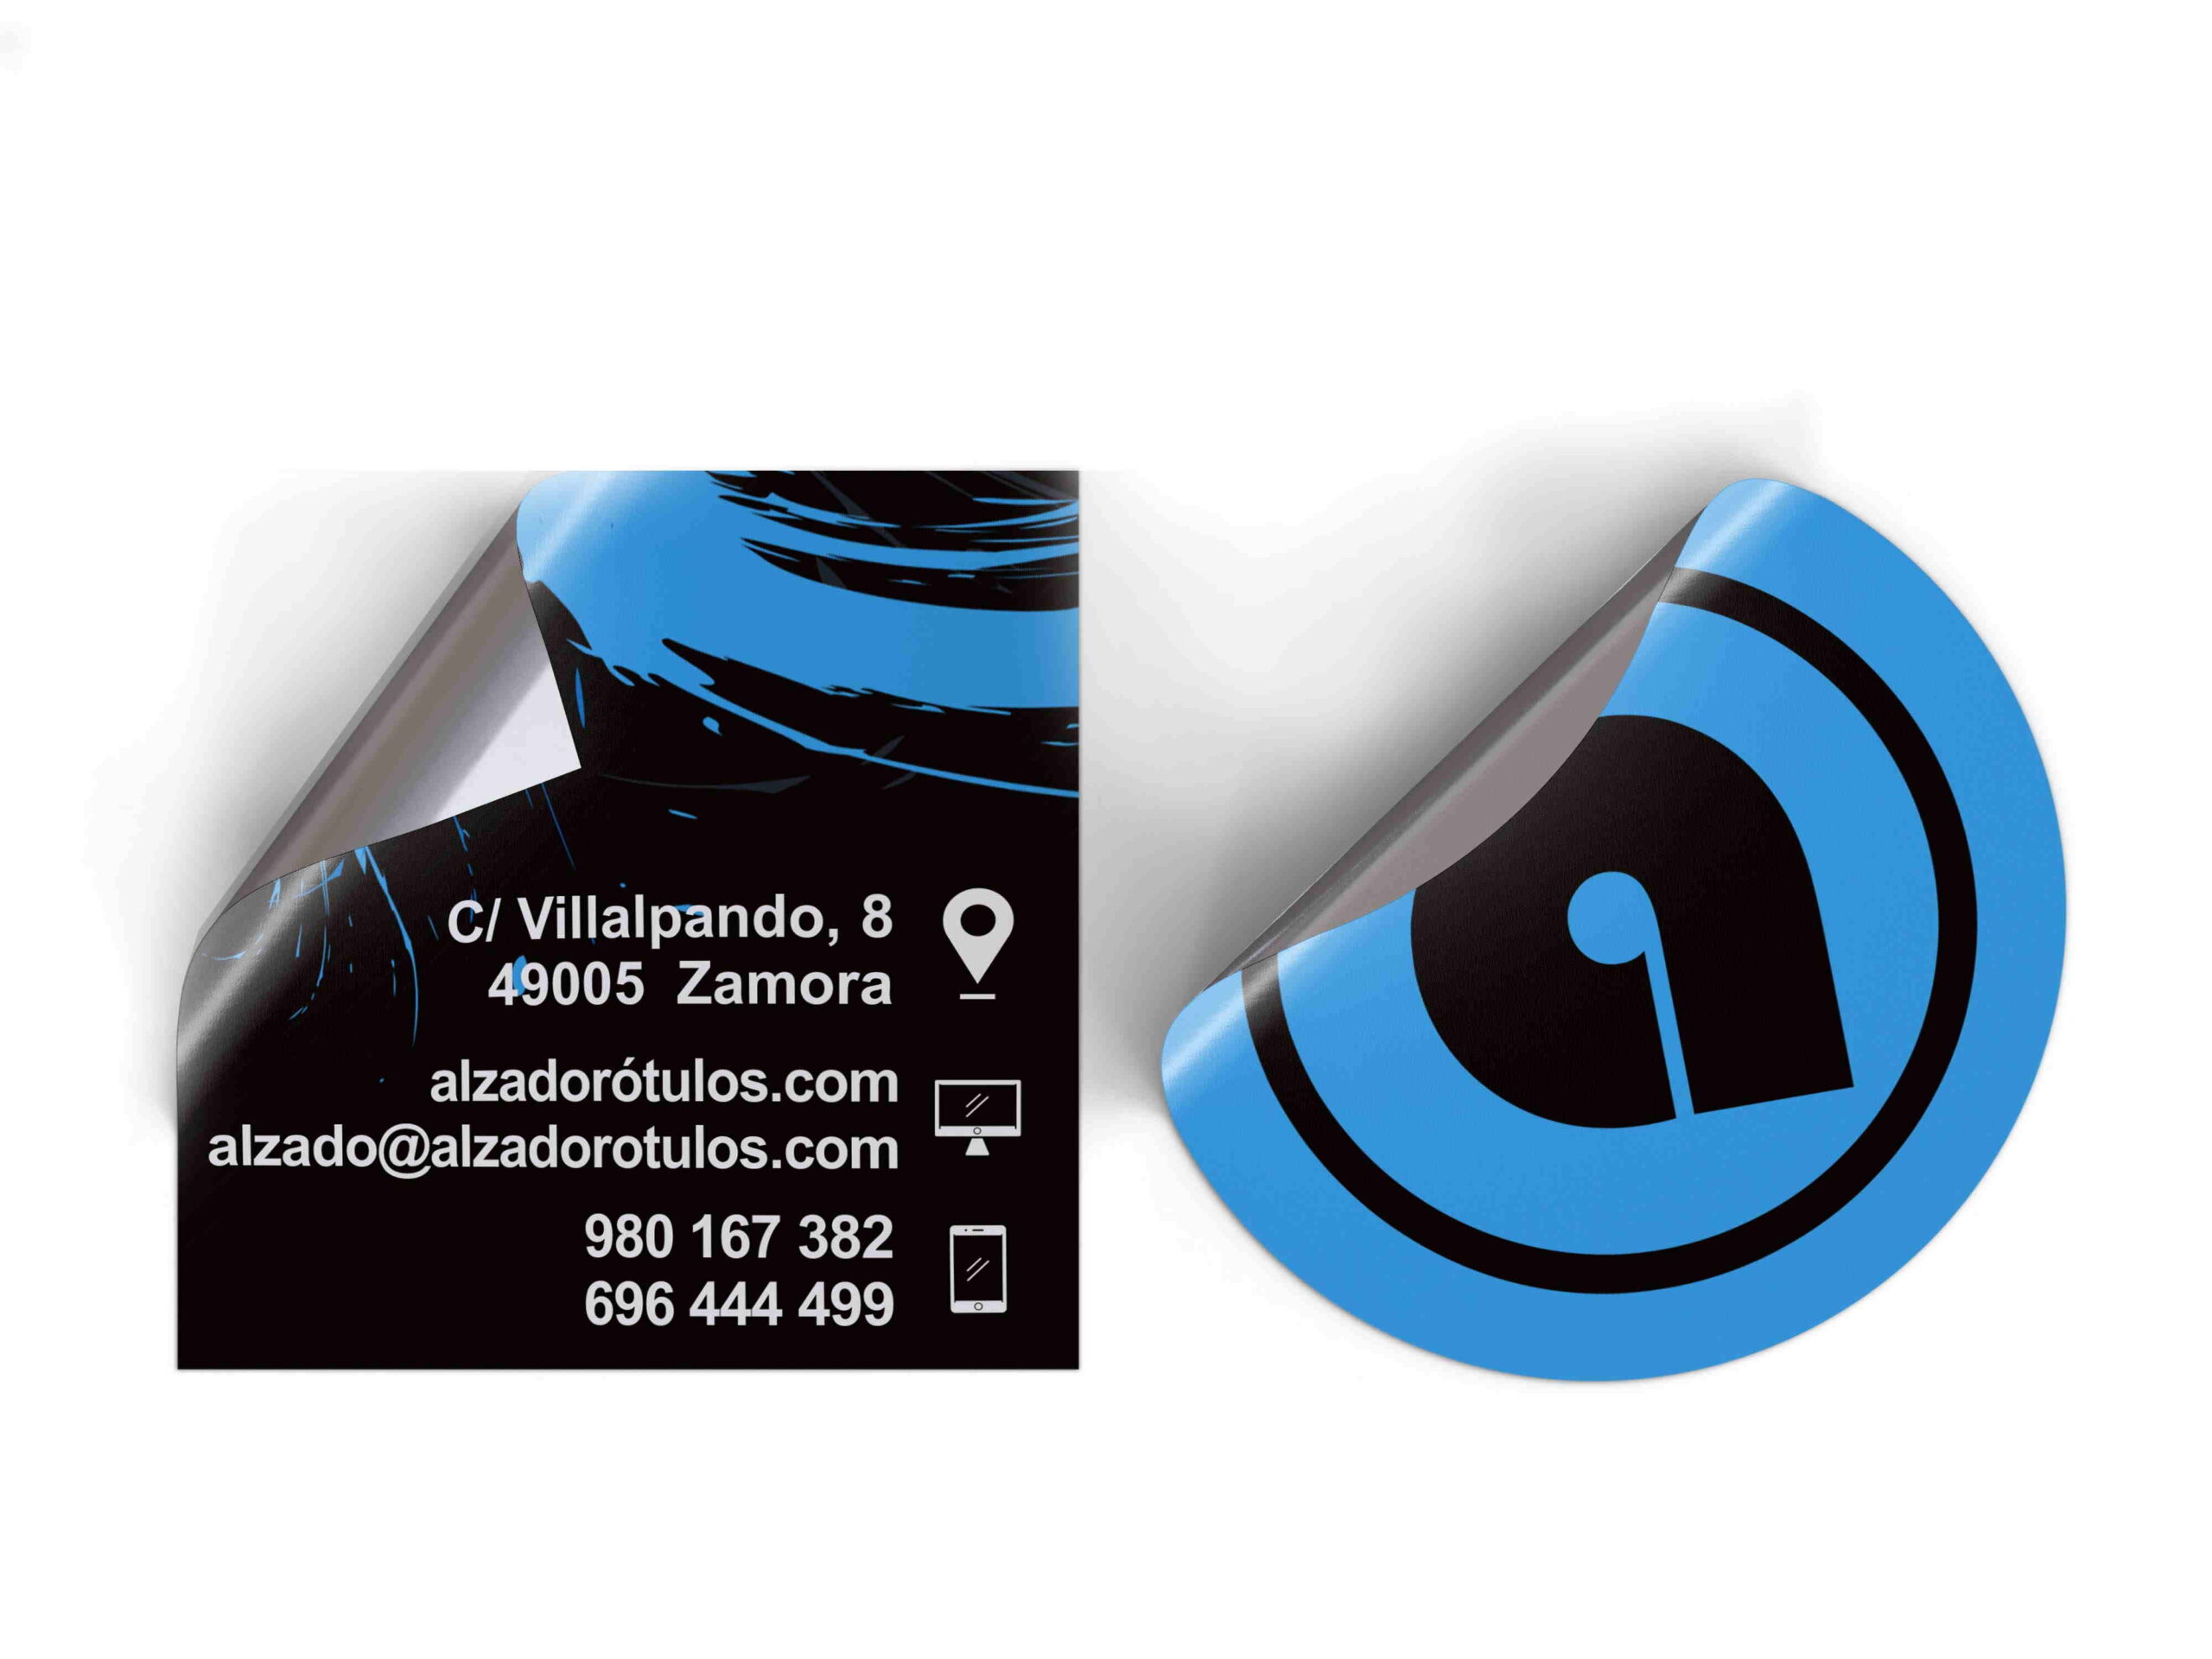 Alzado Rótulos Zamora. Impresión digital para marcas y etiquetas. imagen empresarial, tarjetas de visitas y marketing.